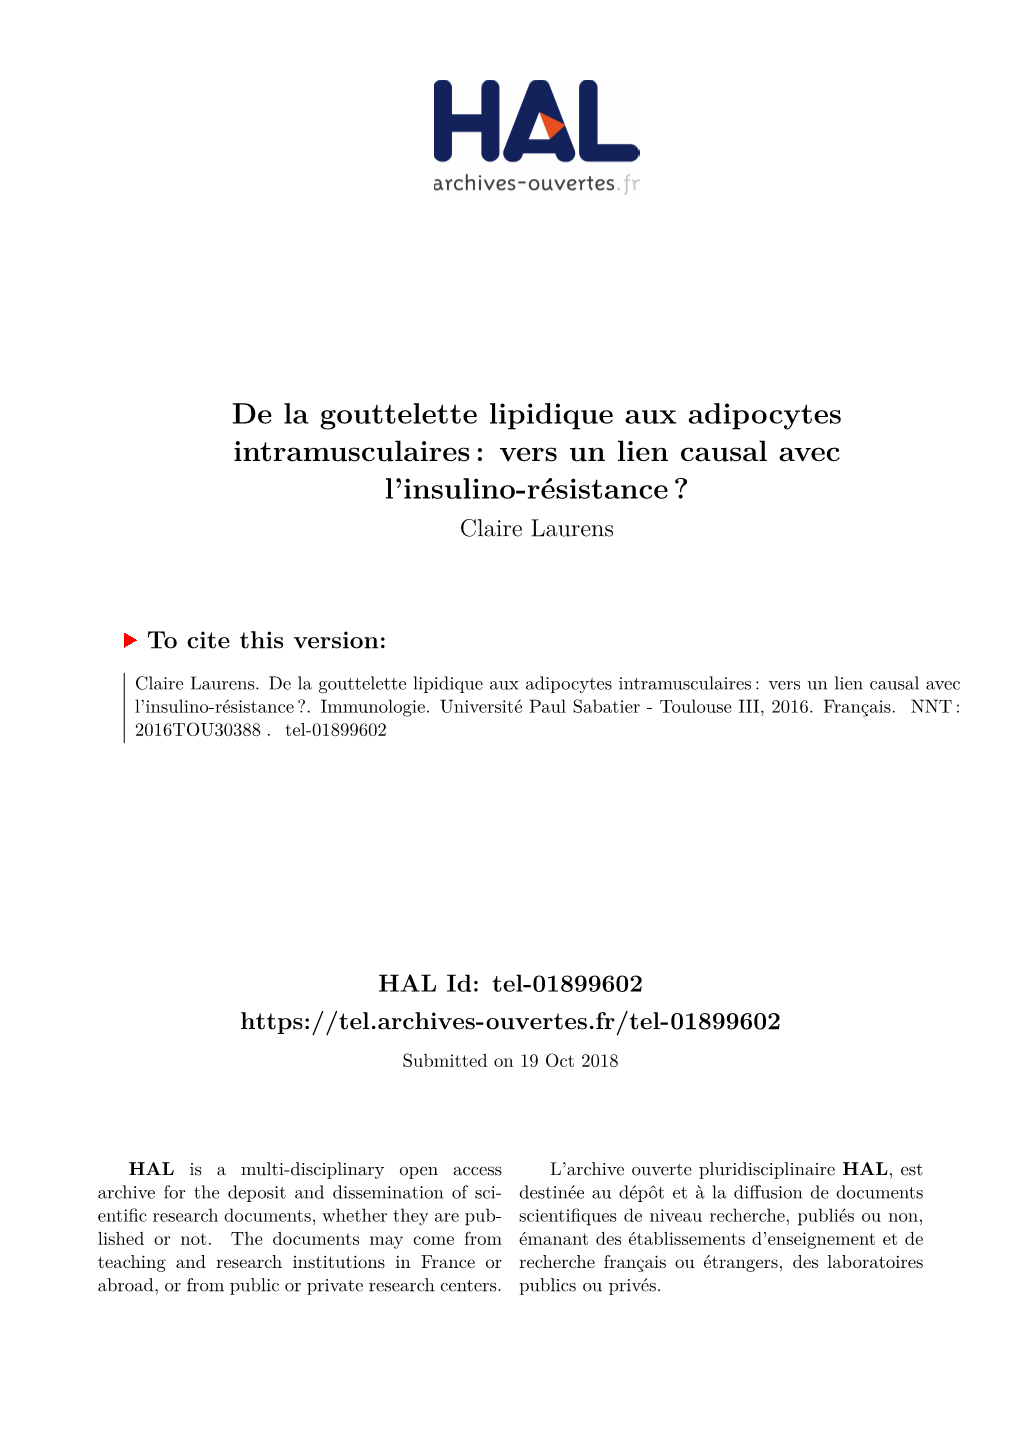 De La Gouttelette Lipidique Aux Adipocytes Intramusculaires : Vers Un Lien Causal Avec L’Insulino-Résistance ? Claire Laurens